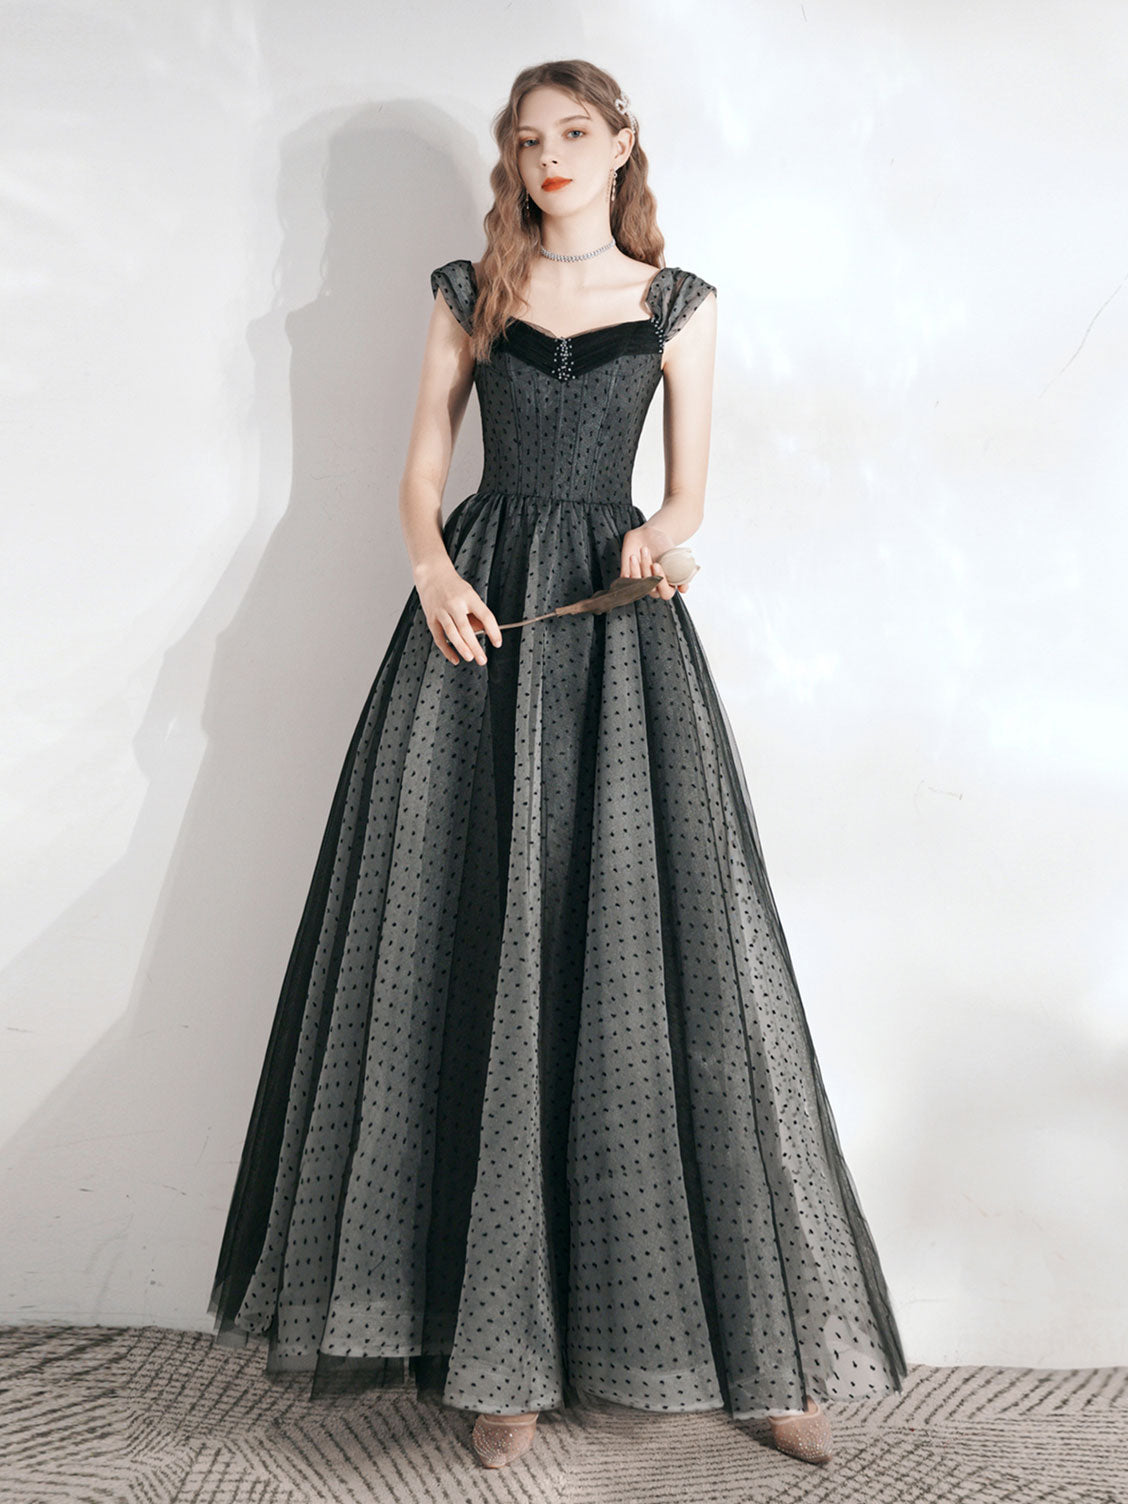 Black Vintage Long Polka Dot Prom Dress Formal Dress - DollyGown